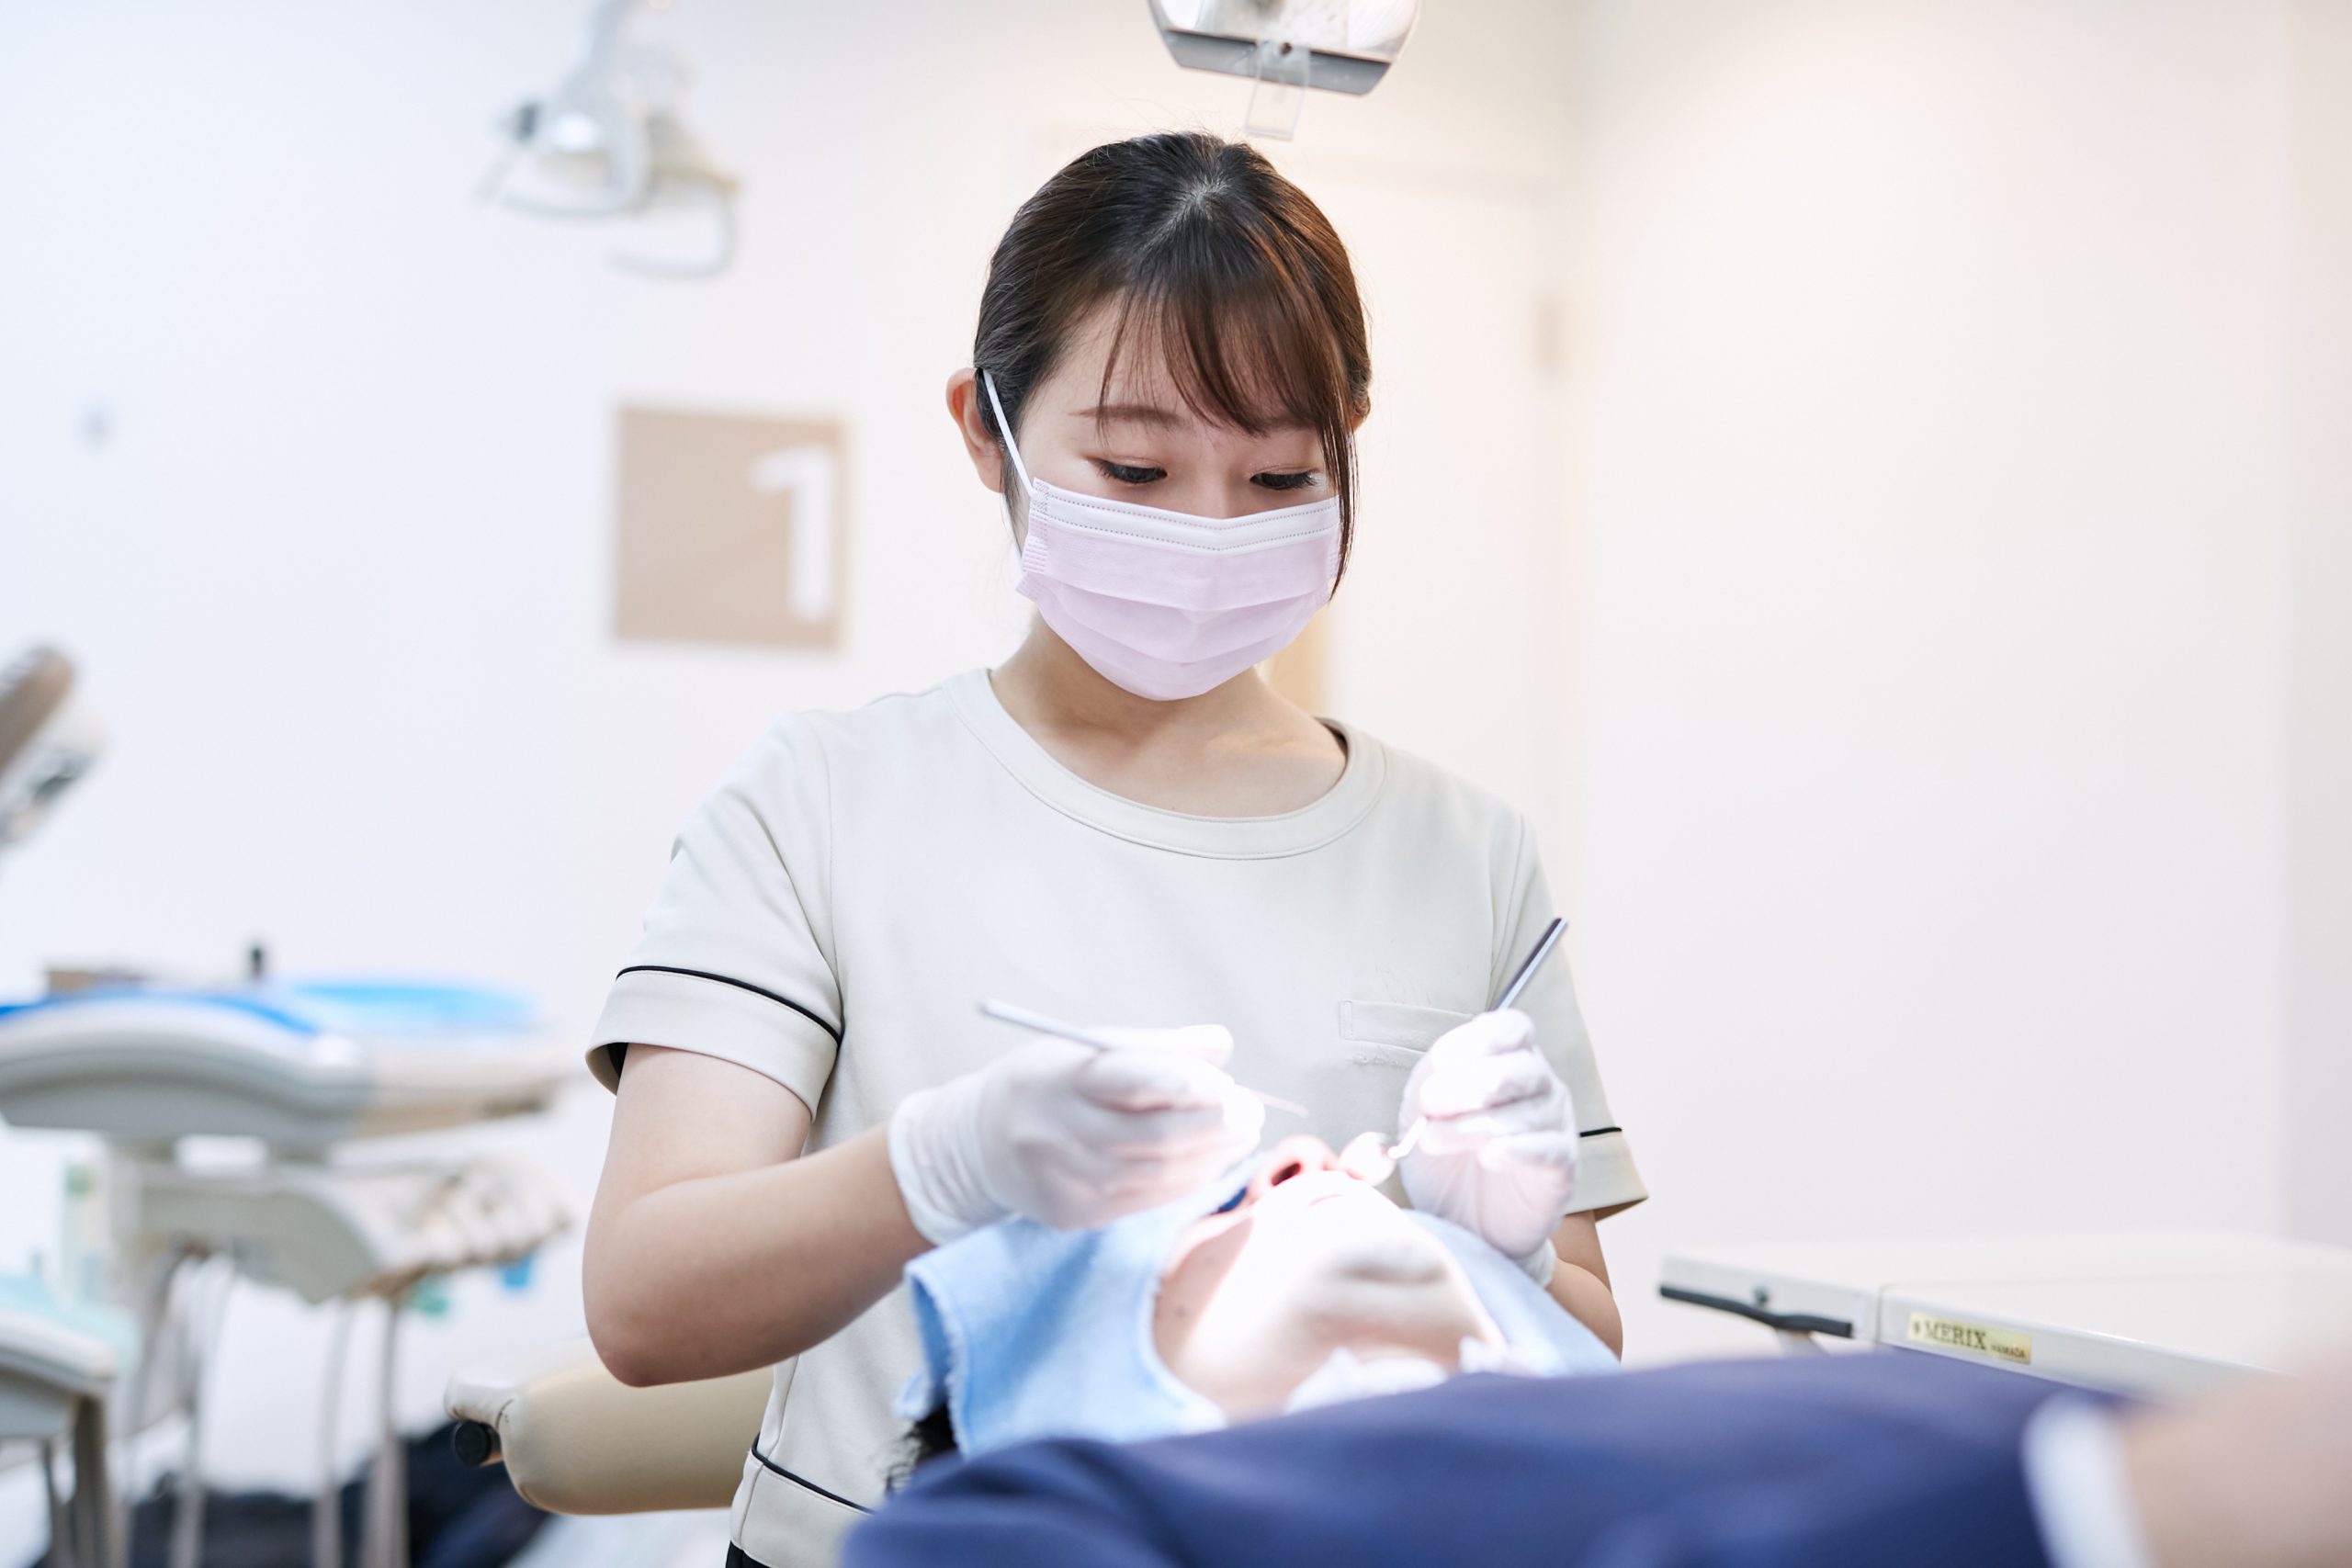 歯科助手 と 歯科衛生士 の違いを知っていますか